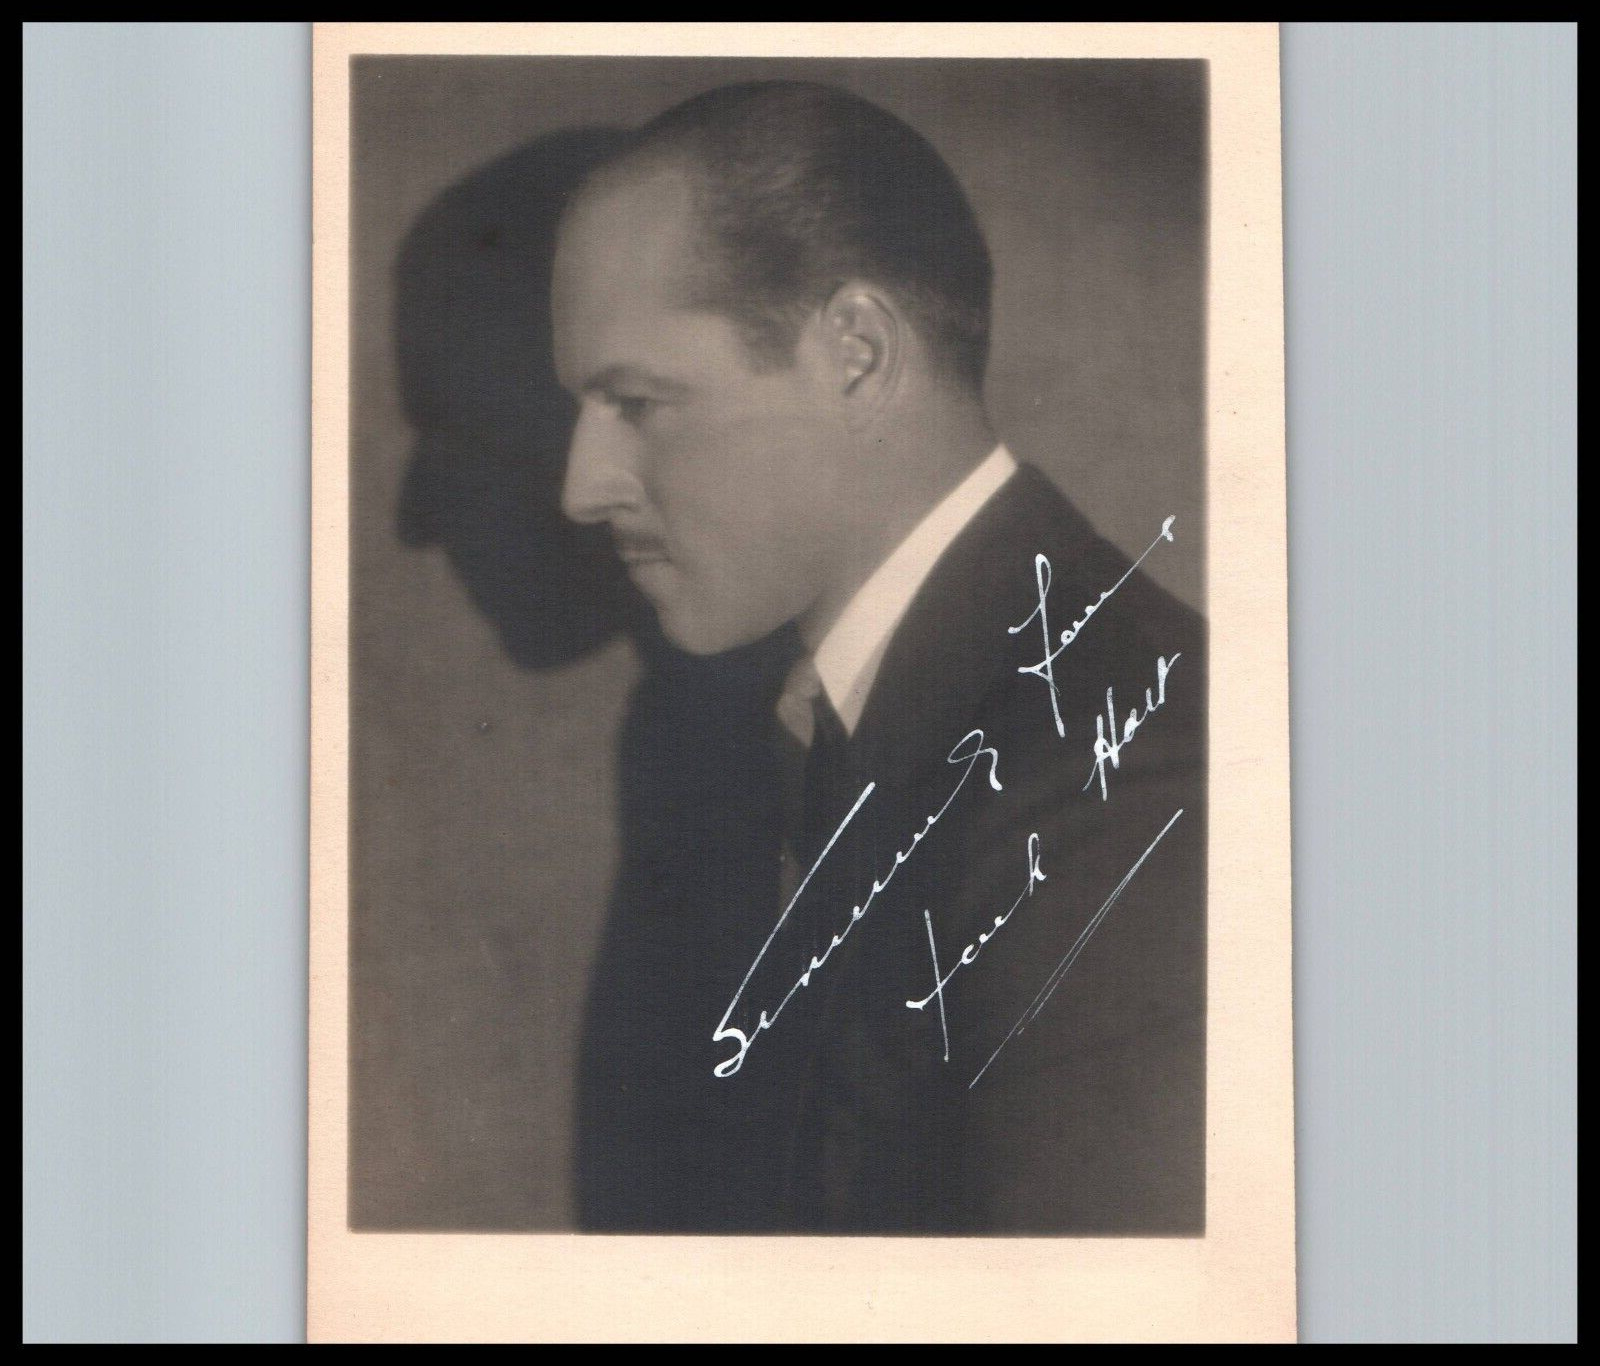 JACK HOLT INSCRIBED SIGNED AUTOGRAPH SP PORTRAIT 1920s VINTAGE ORIG Photo 200